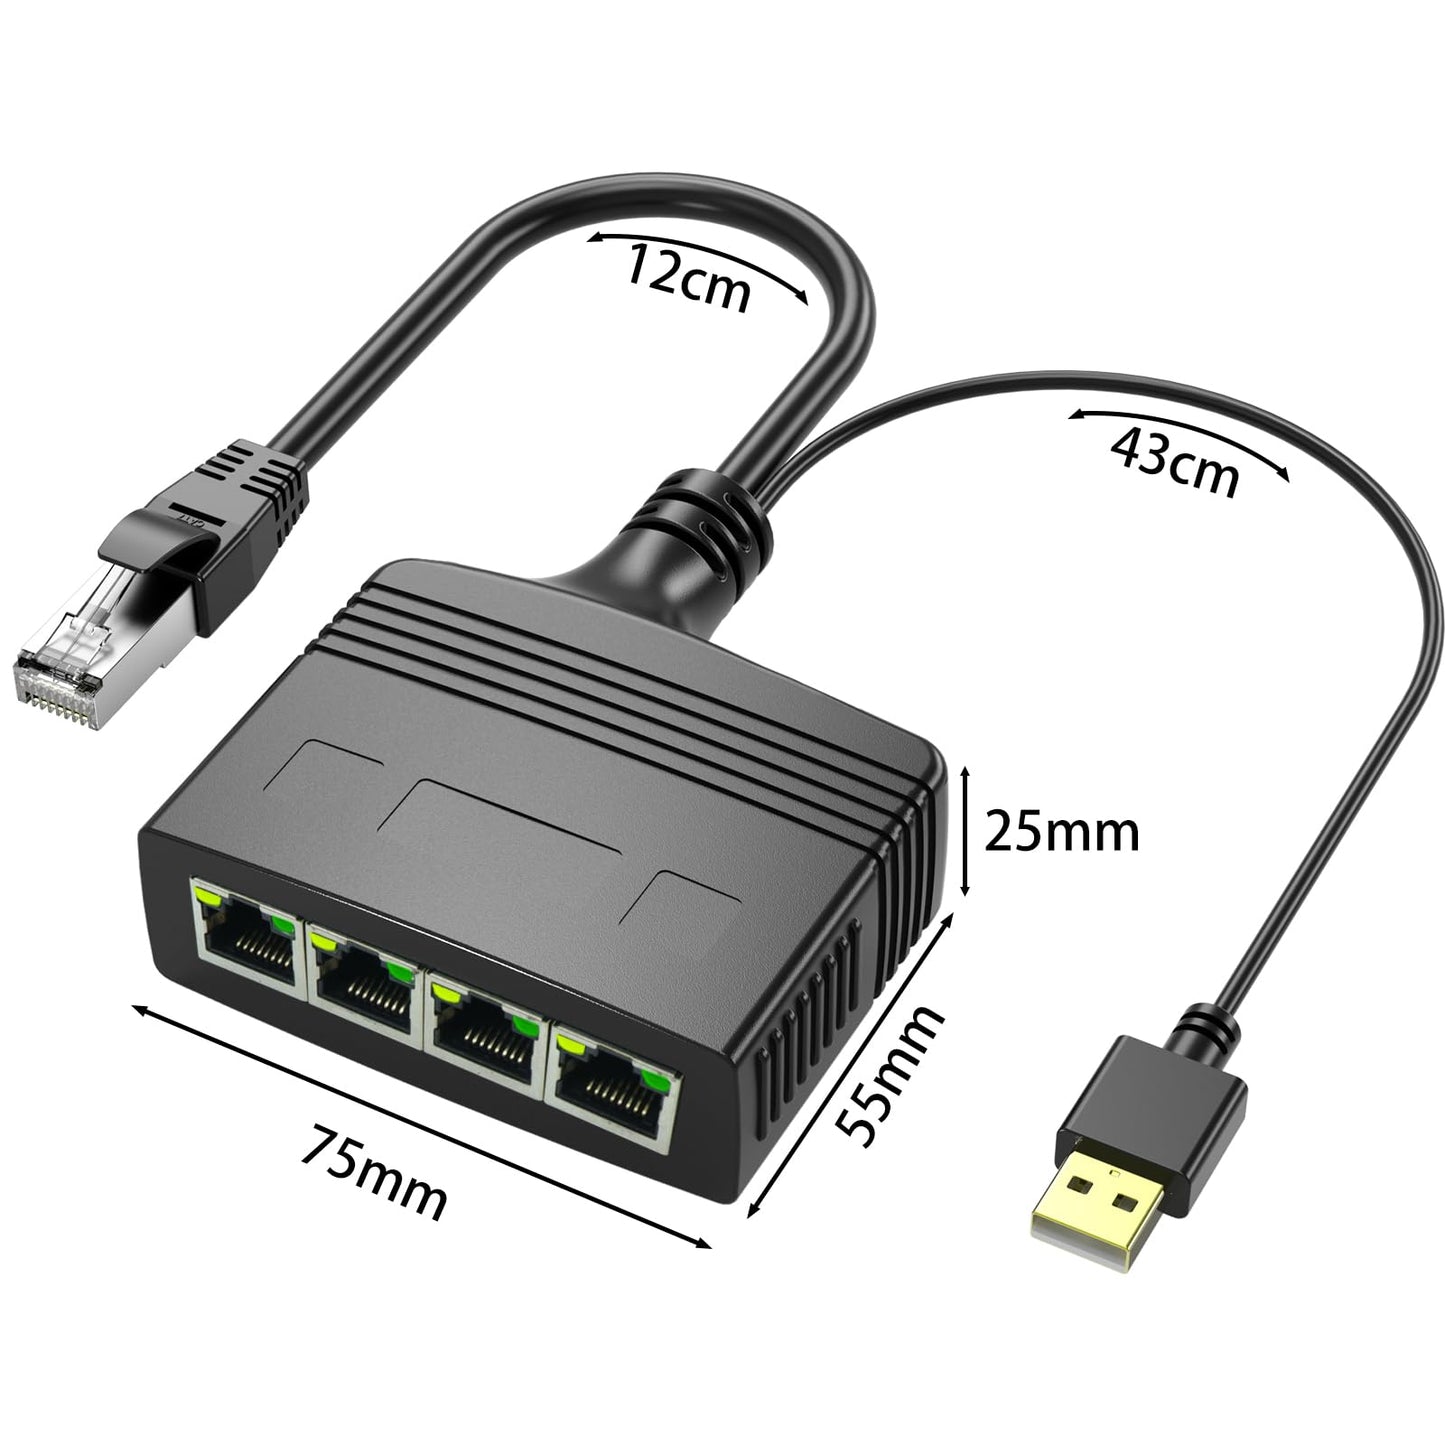 1 To 2/3/4 Port 1000 Mbps RJ45 Ethernet Splitter Adapter Gigabit LAN Network Expansion Multiple Devices Sharing Internet Same time